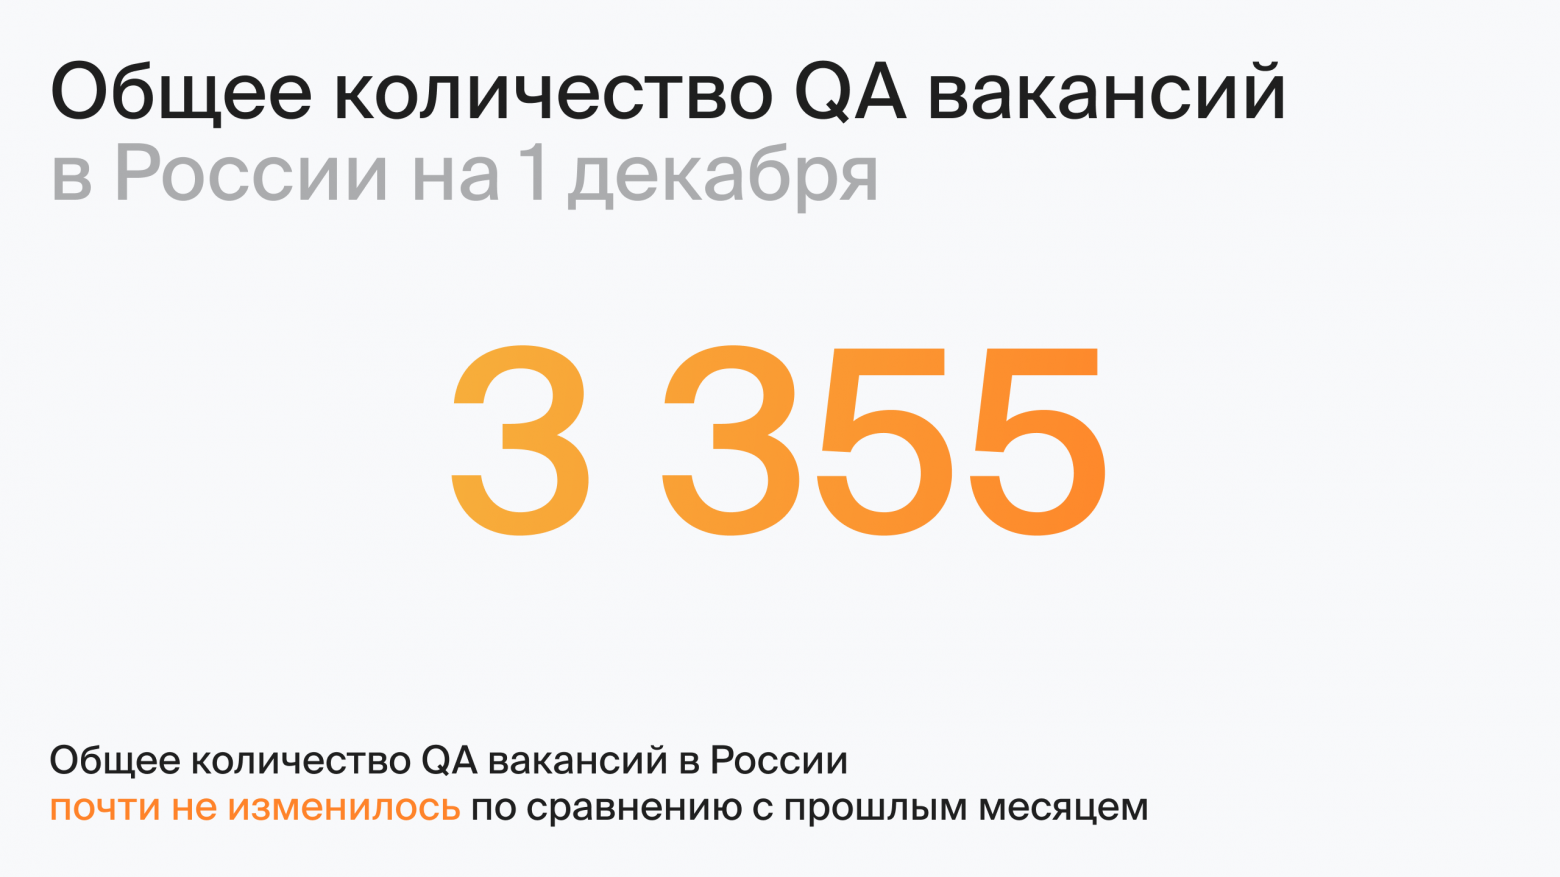 Общее количество QA вакансий в России на 1 декабря (по данным hh.ru)